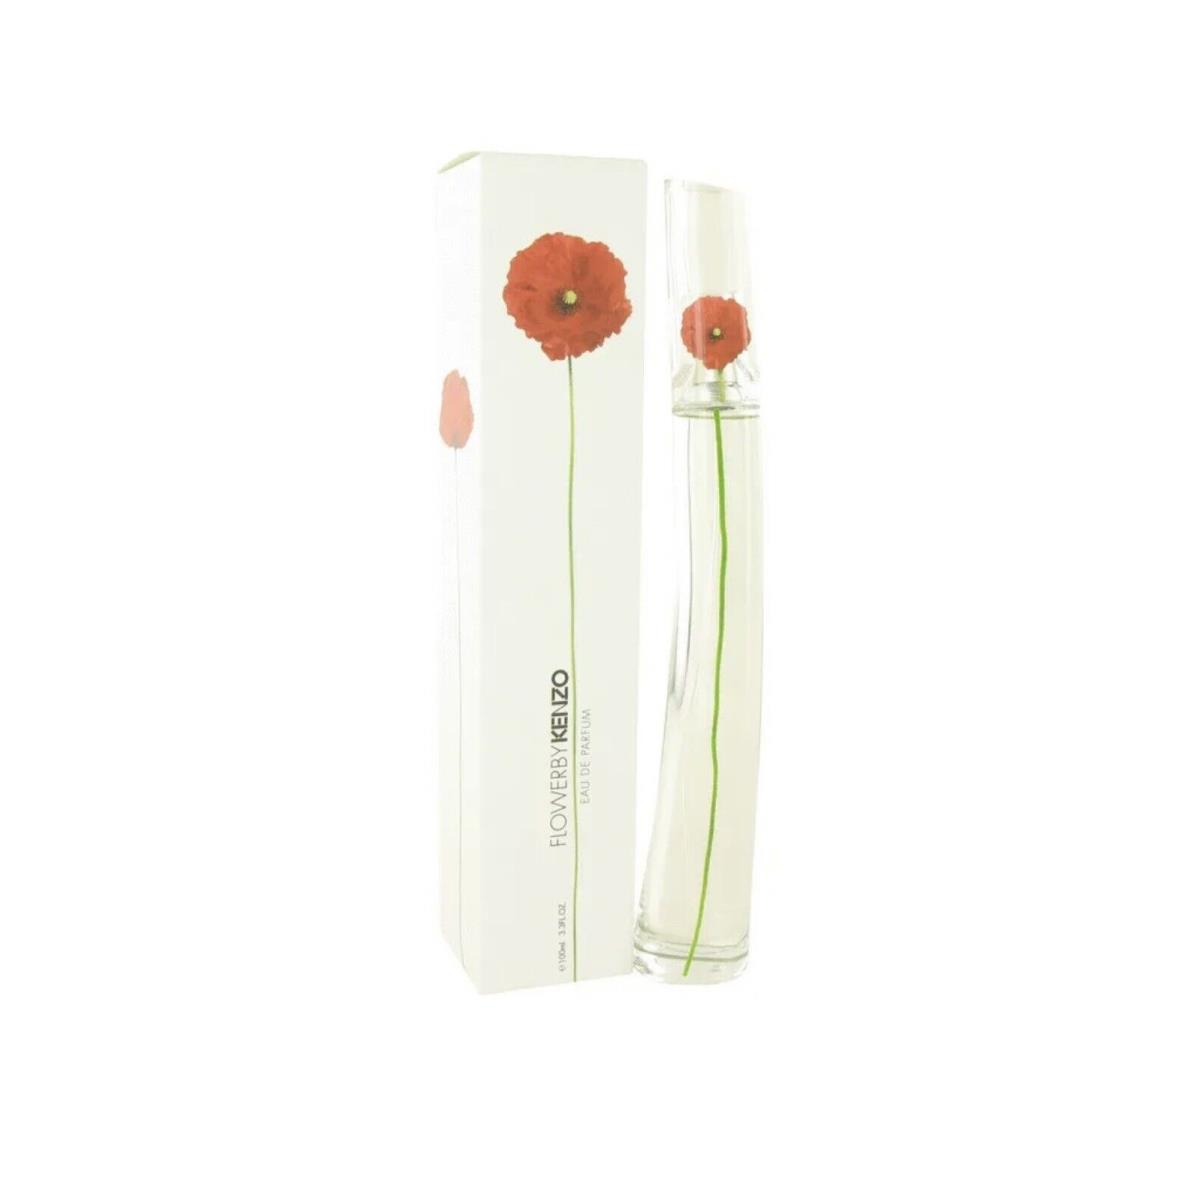 Kenzo Flower by Kenzo 3.3 oz 100 ml Edp Spray Perfume For Women